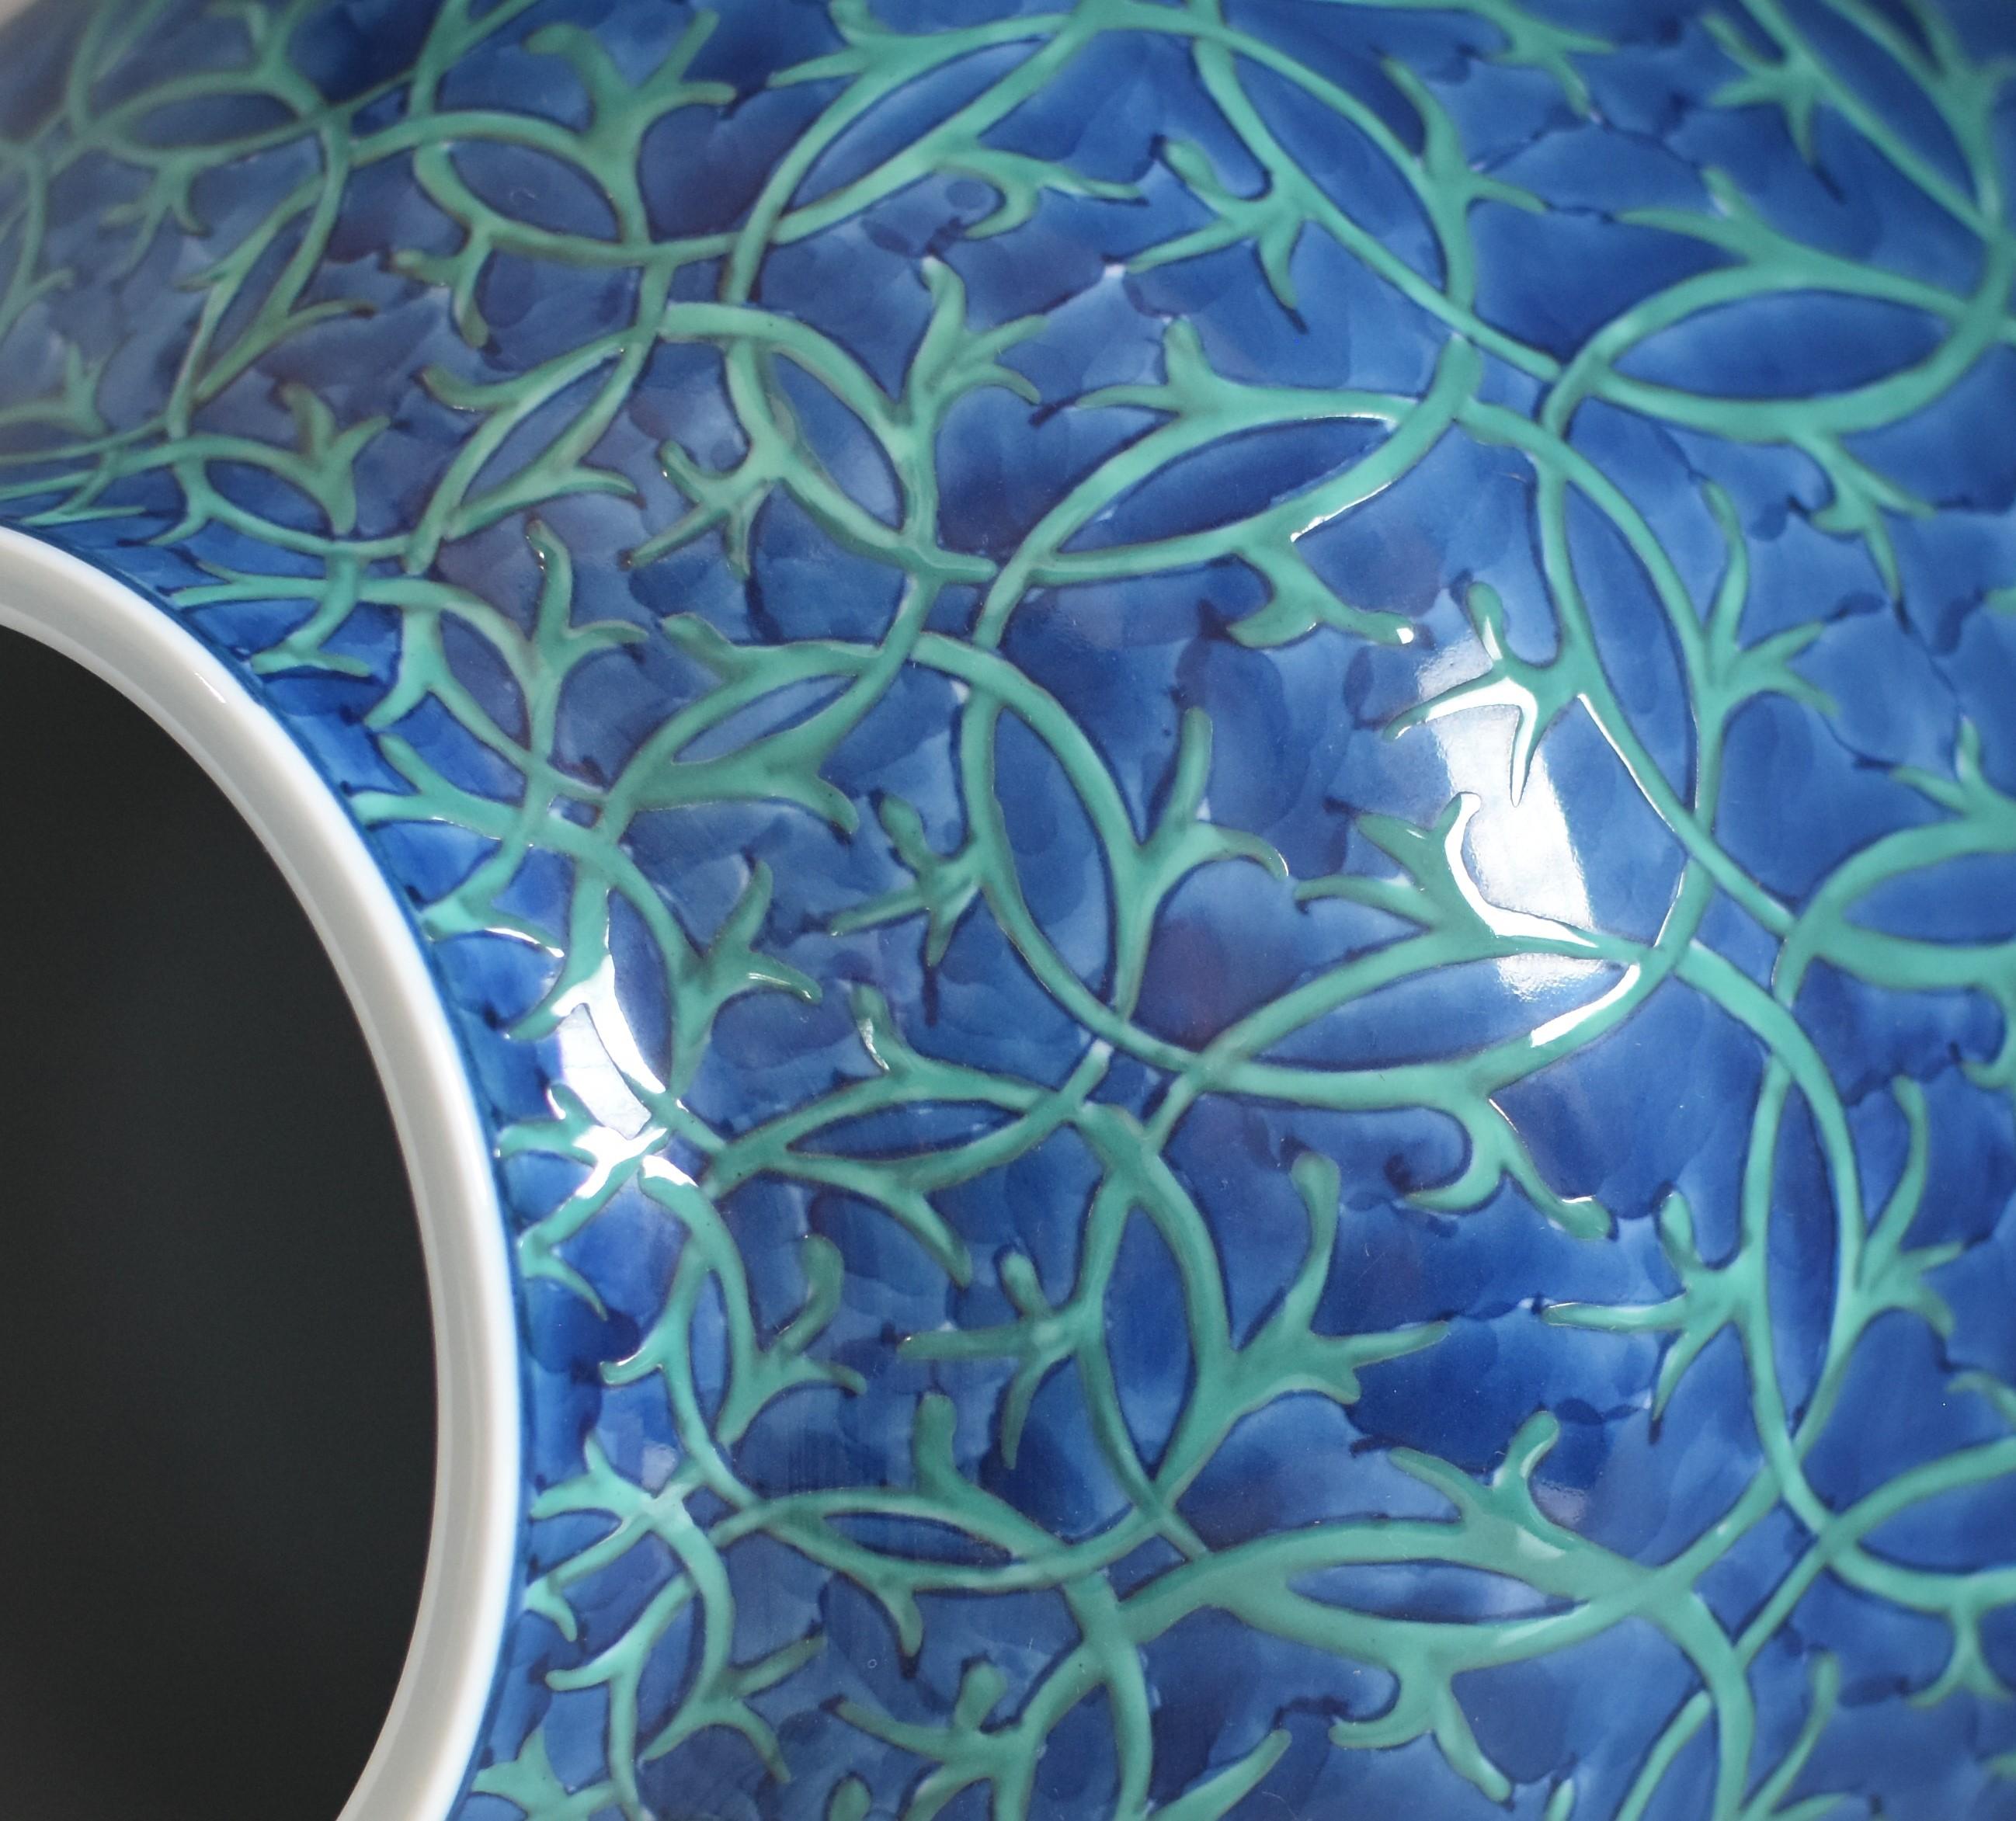 Exquis vase en porcelaine japonaise contemporaine, peint à la main en bleu et vert profonds sur un corps de forme magnifique, l'œuvre d'un maître porcelainier de troisième génération de la région d'Imari-Aita au Japon, largement acclamé et primé. Le